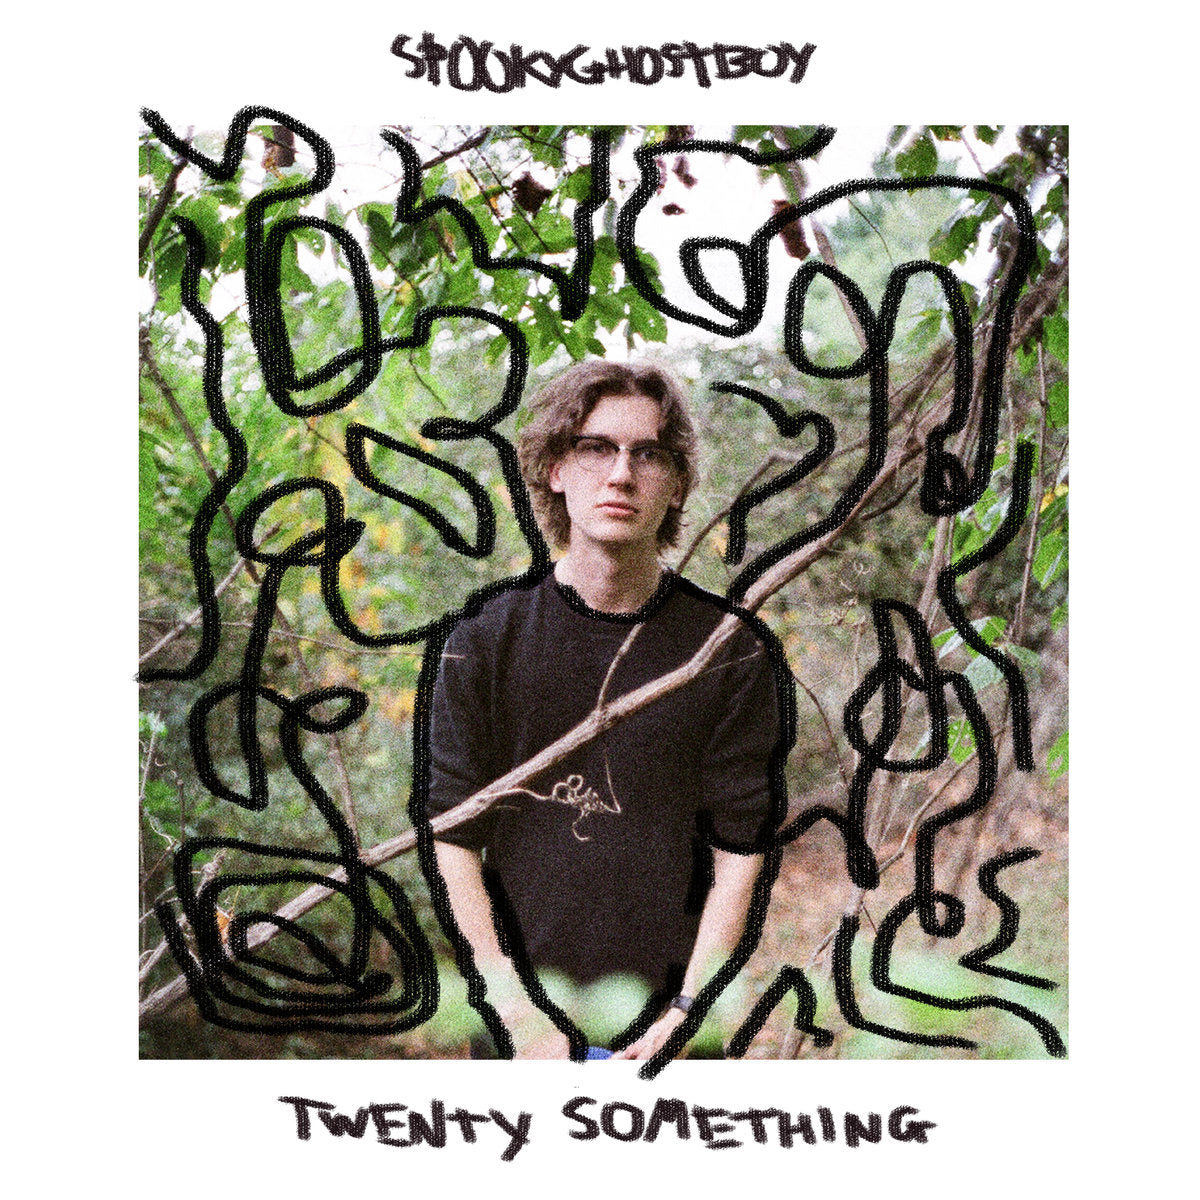 spookyghostboy - Twenty Something